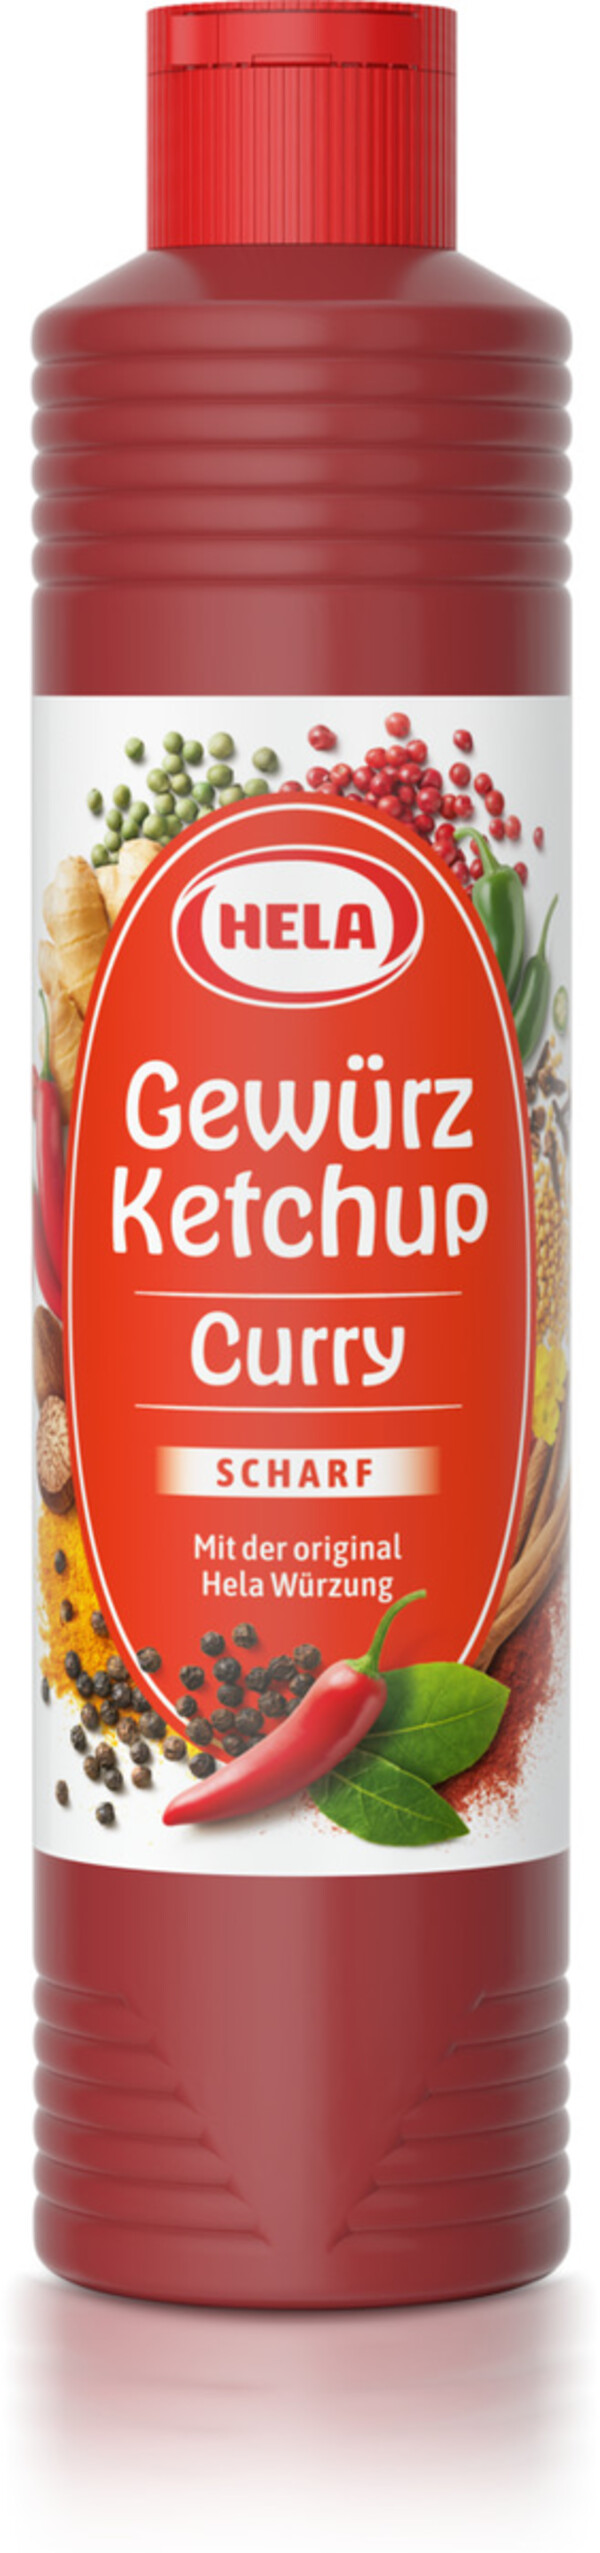 Hela Curry Gewürz-Ketchup scharf 800 ml von Edeka24 für 2,69 € ansehen!